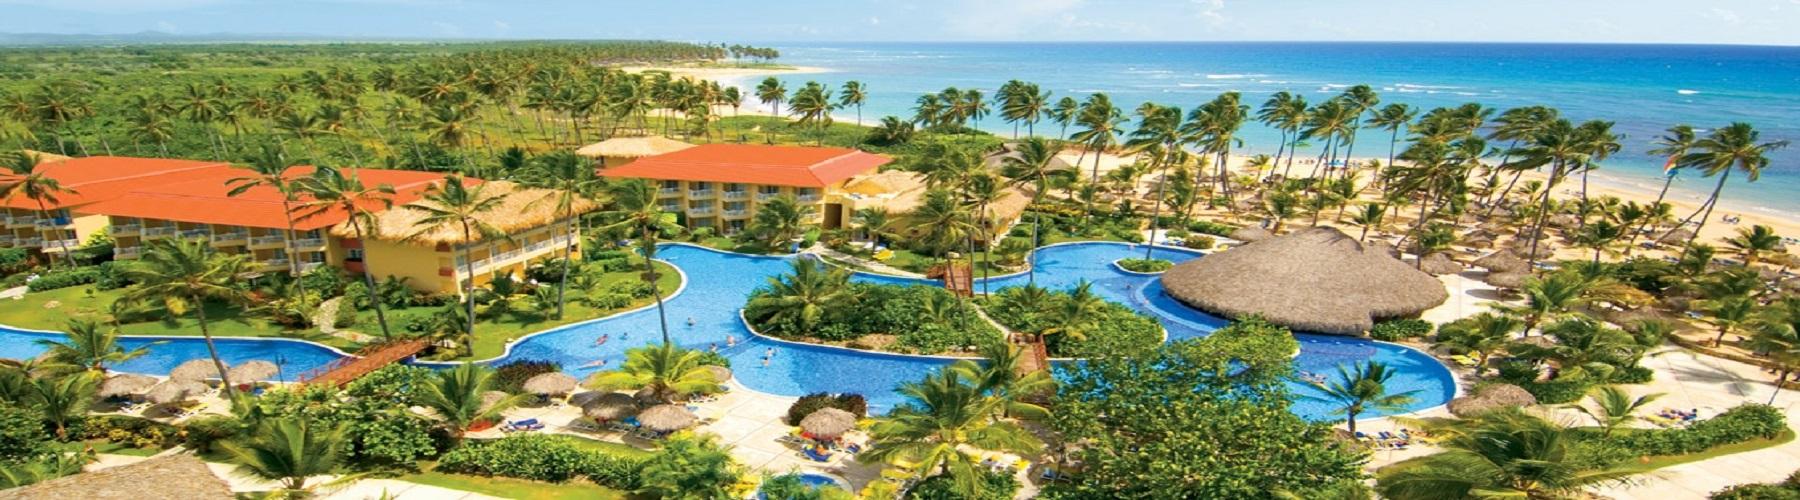 Отель Dreams Punta Cana Resort and Spa 5*